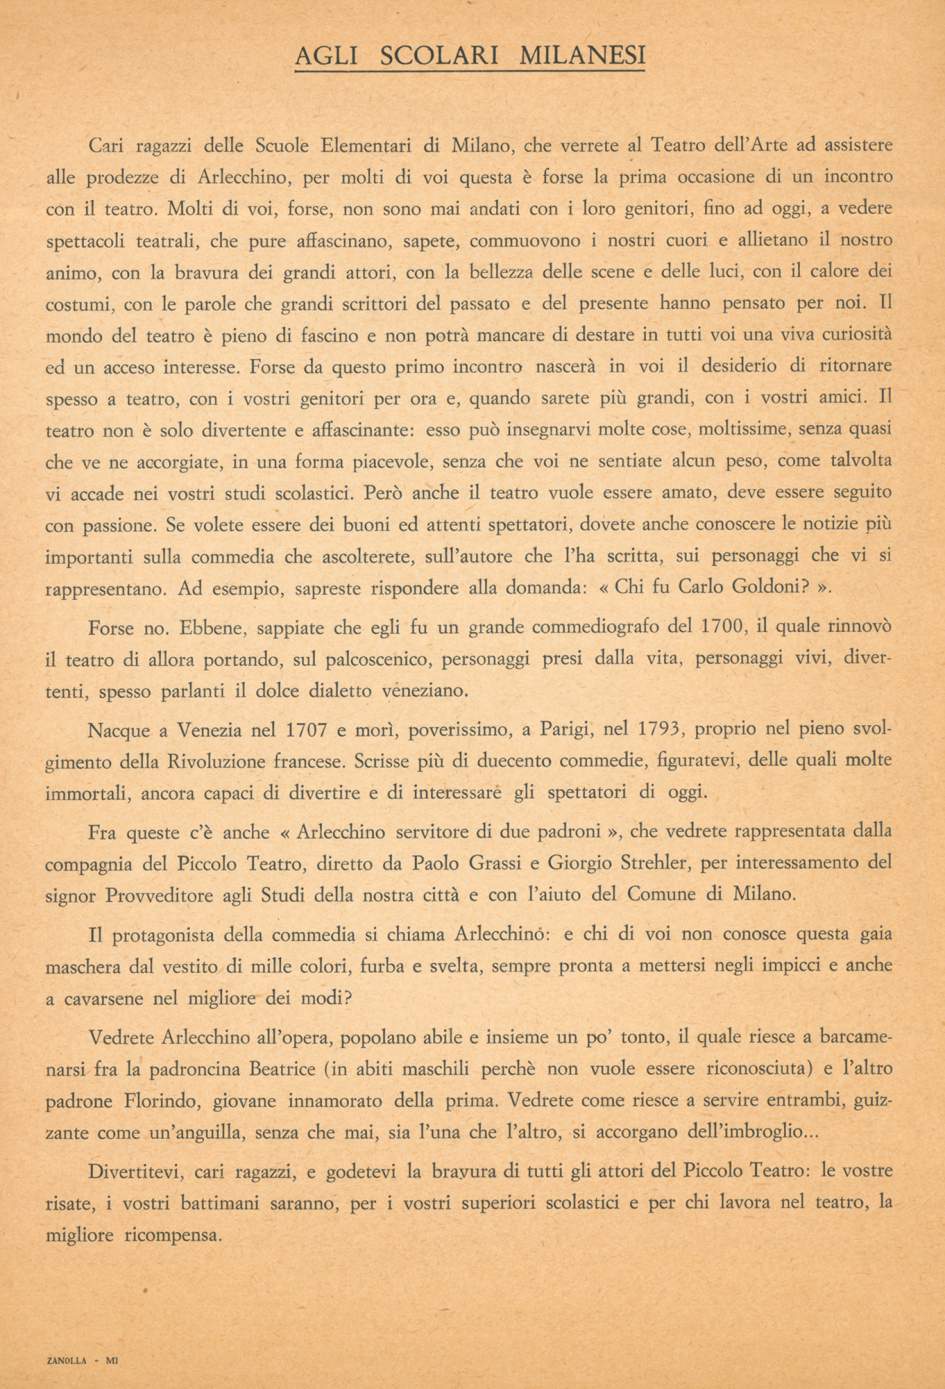 Invito agli scolari milanesi, Teatro dell’Arte, 7 novembre 1966 - Archivio Piccolo Teatro di Milano 